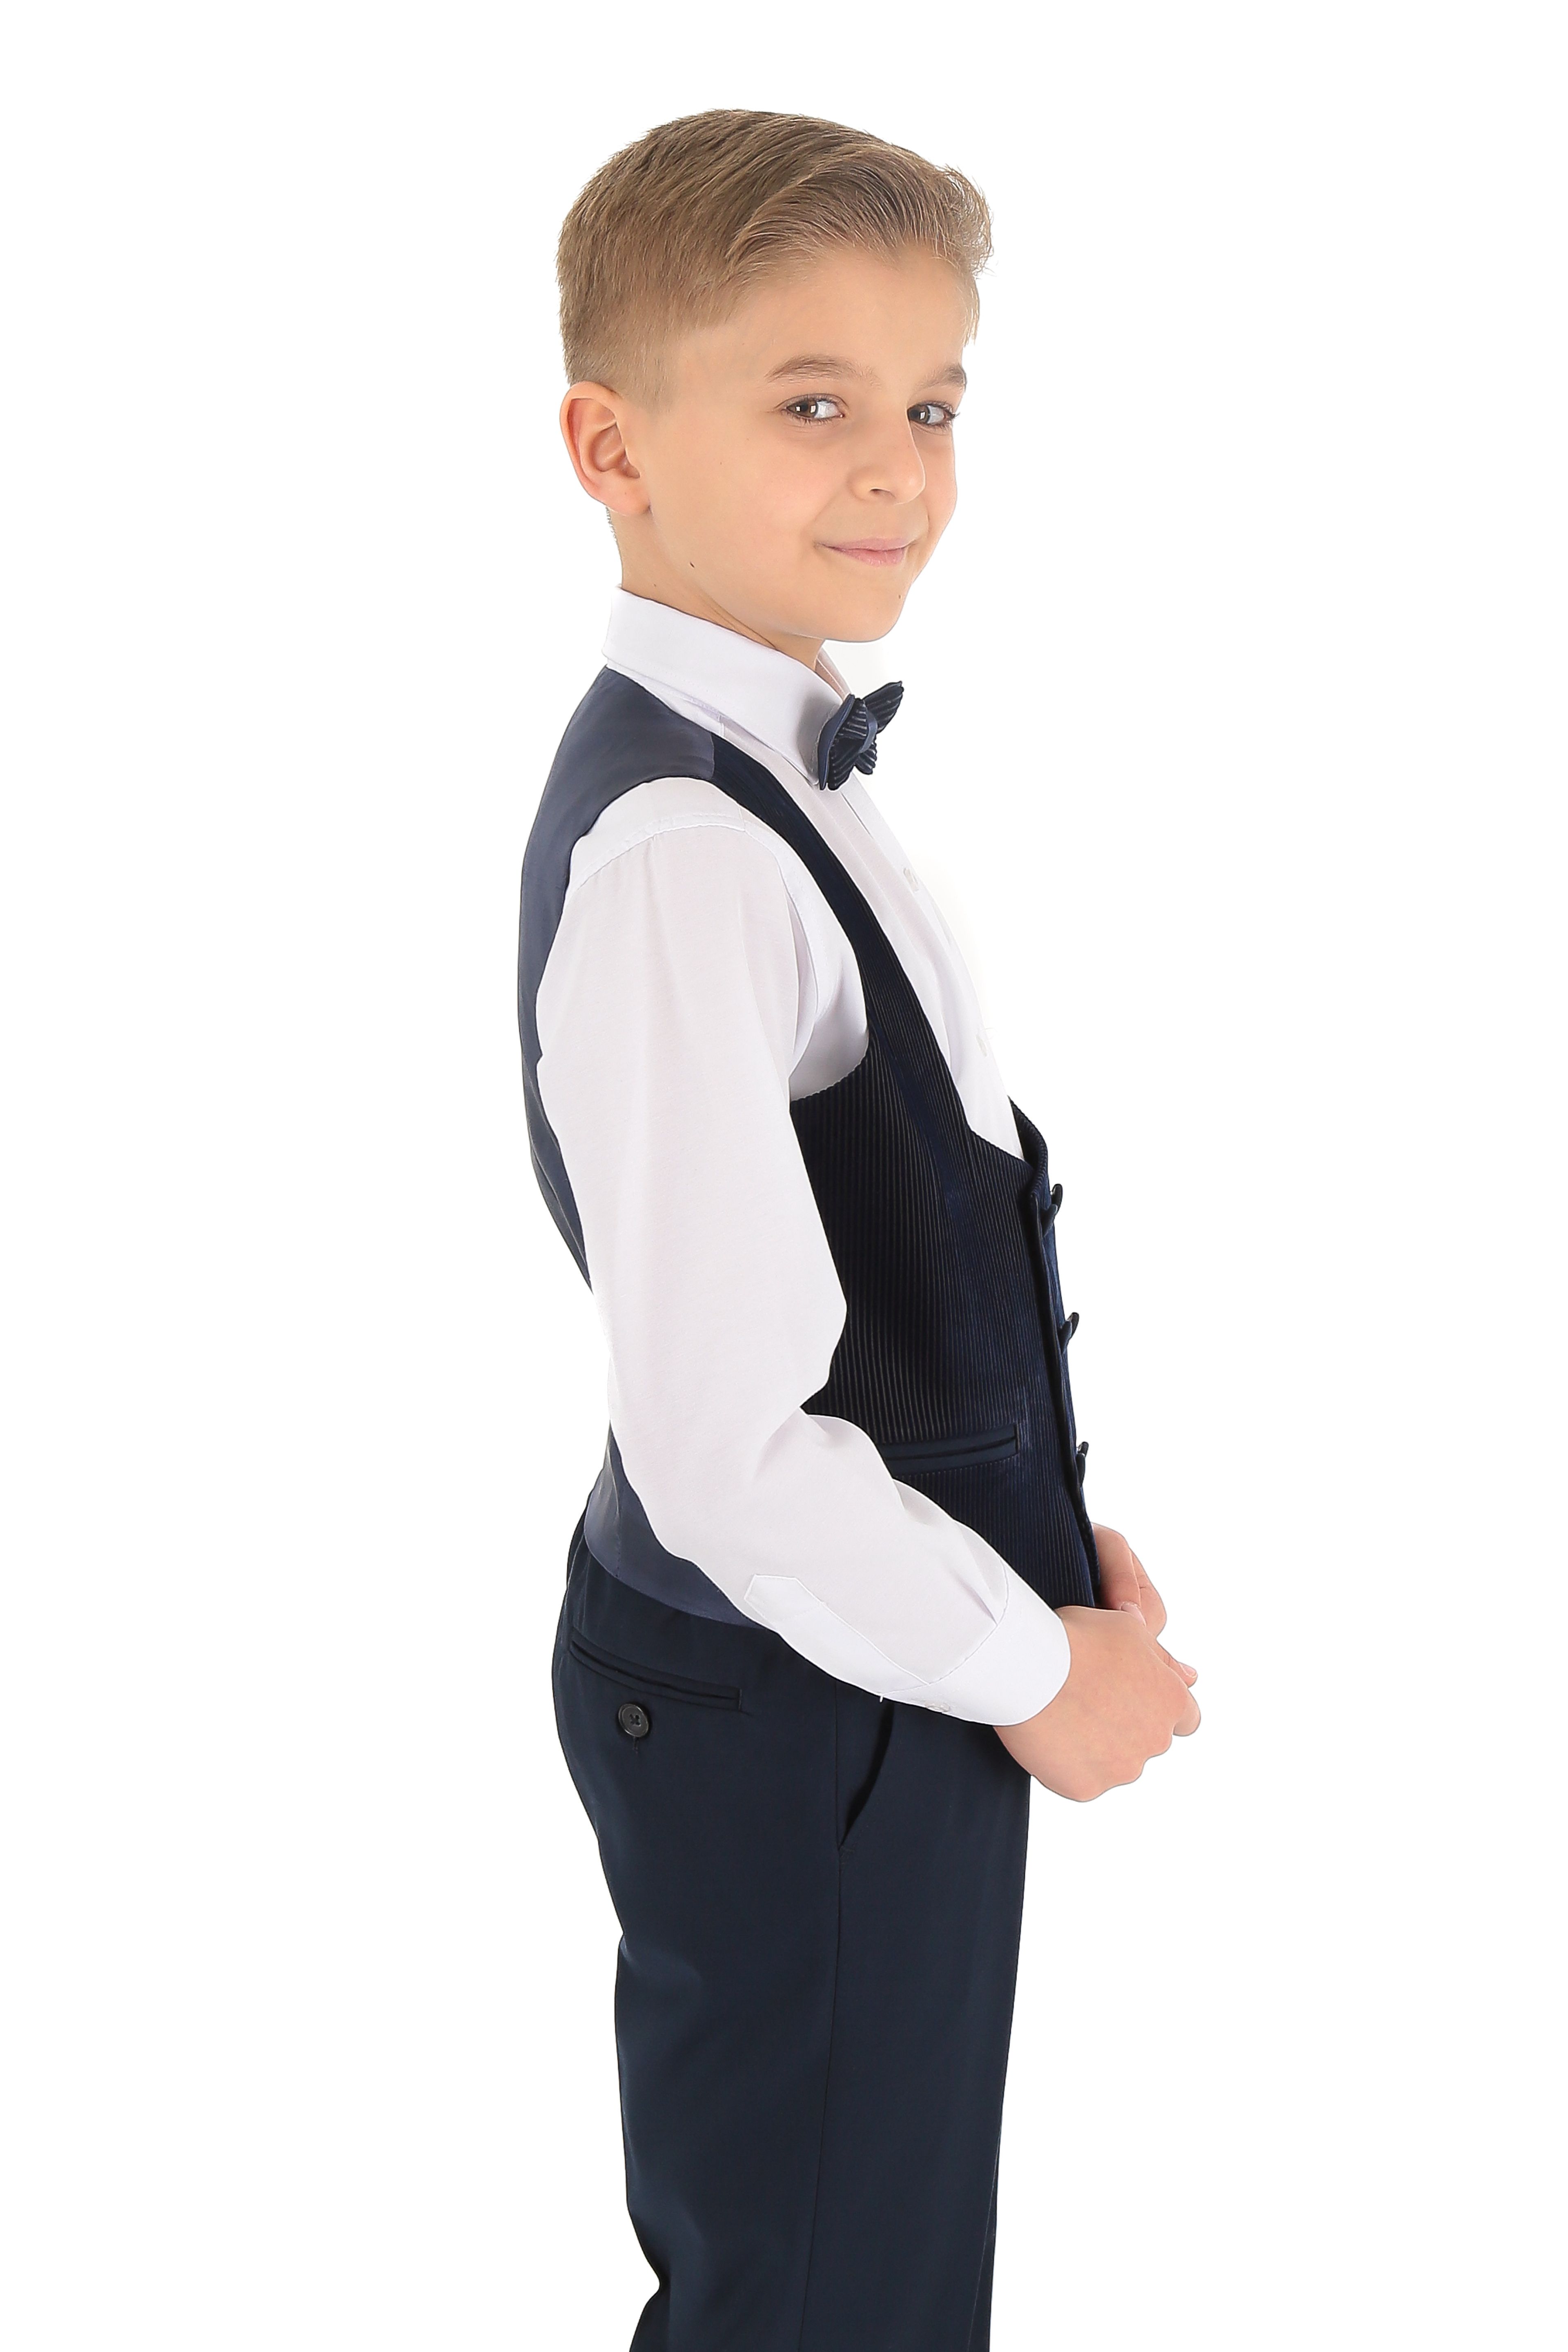 Erkek Çocuk Damatlık Şal Kadife Yaka 3 Parça Takım Elbise - Lacivert